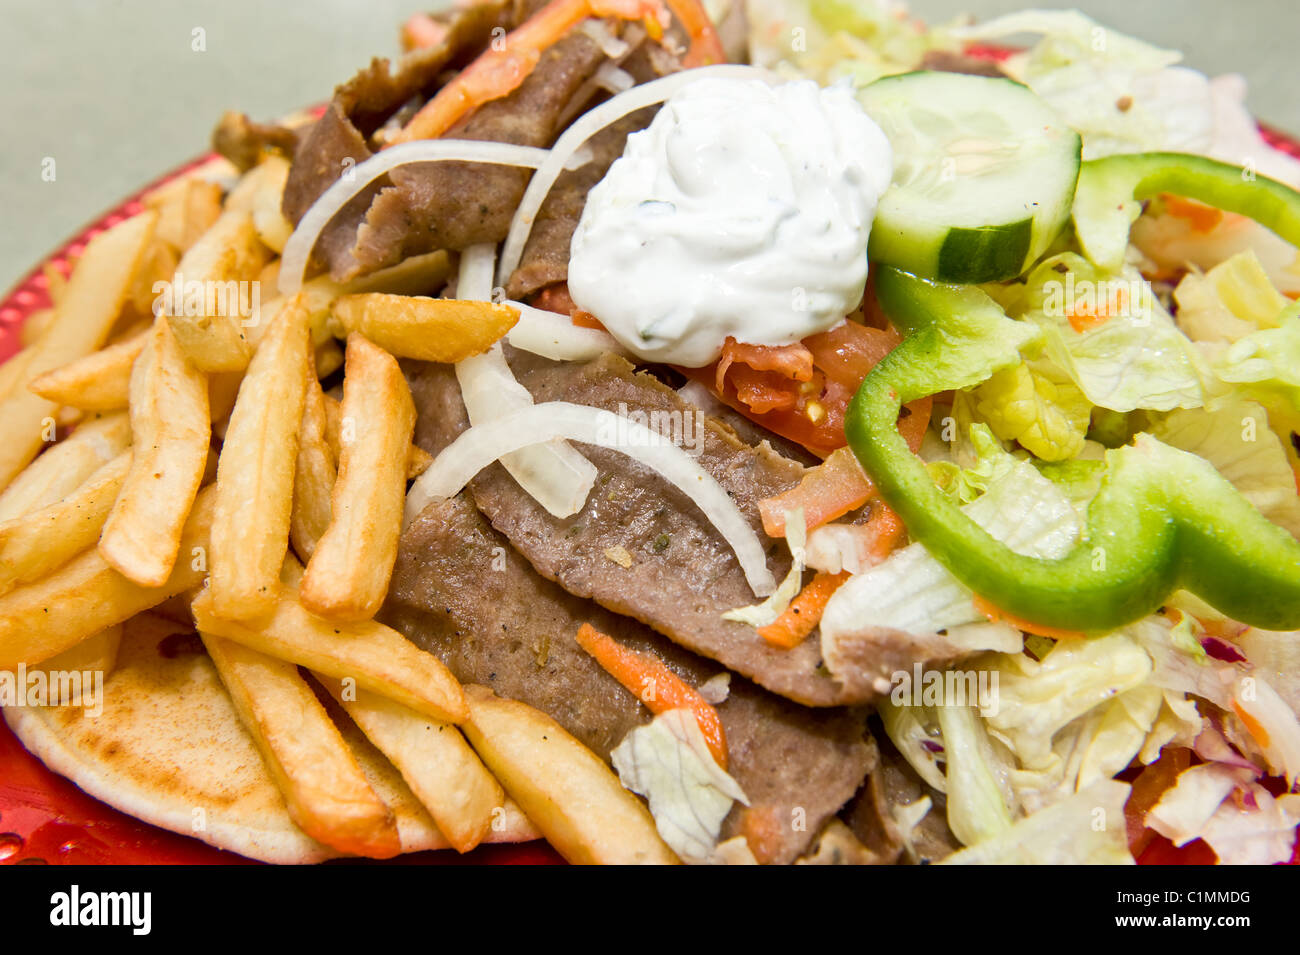 Grande assiette de sandwich gyro grec servis avec frites, légumes et condiments Banque D'Images